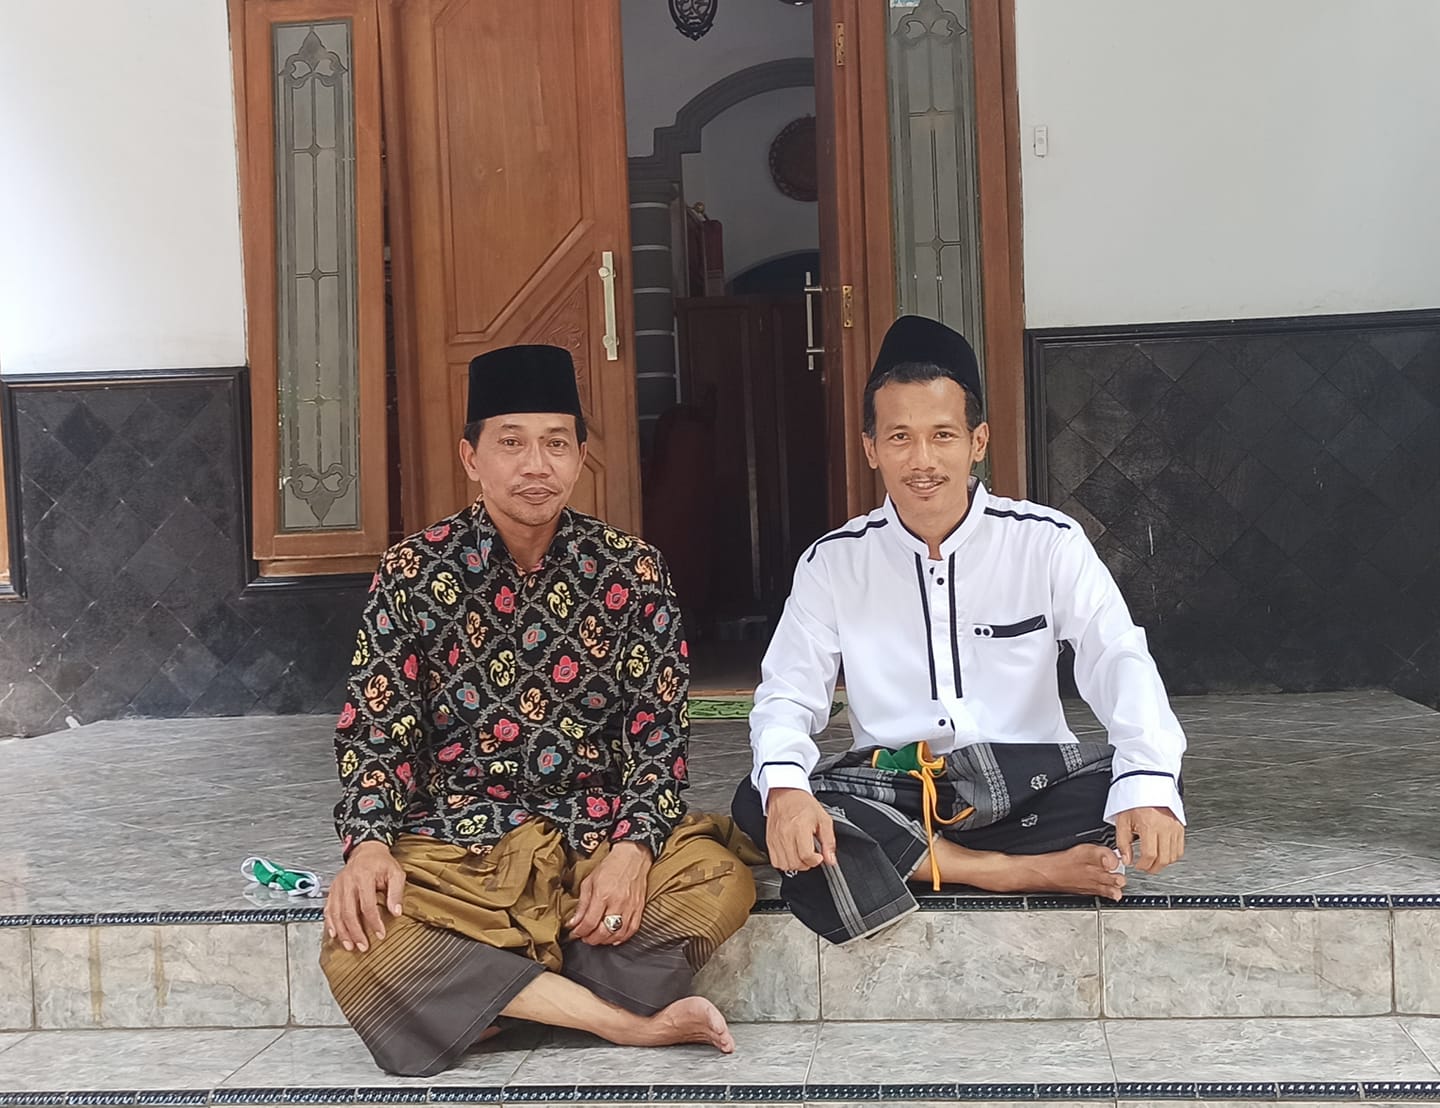 Kiai Bahrul Ulum Tanggamus bersama Ainur Rofiq Al Amin saat di Pesantren Tambakberas Jombang. (Foto: Istimewa)